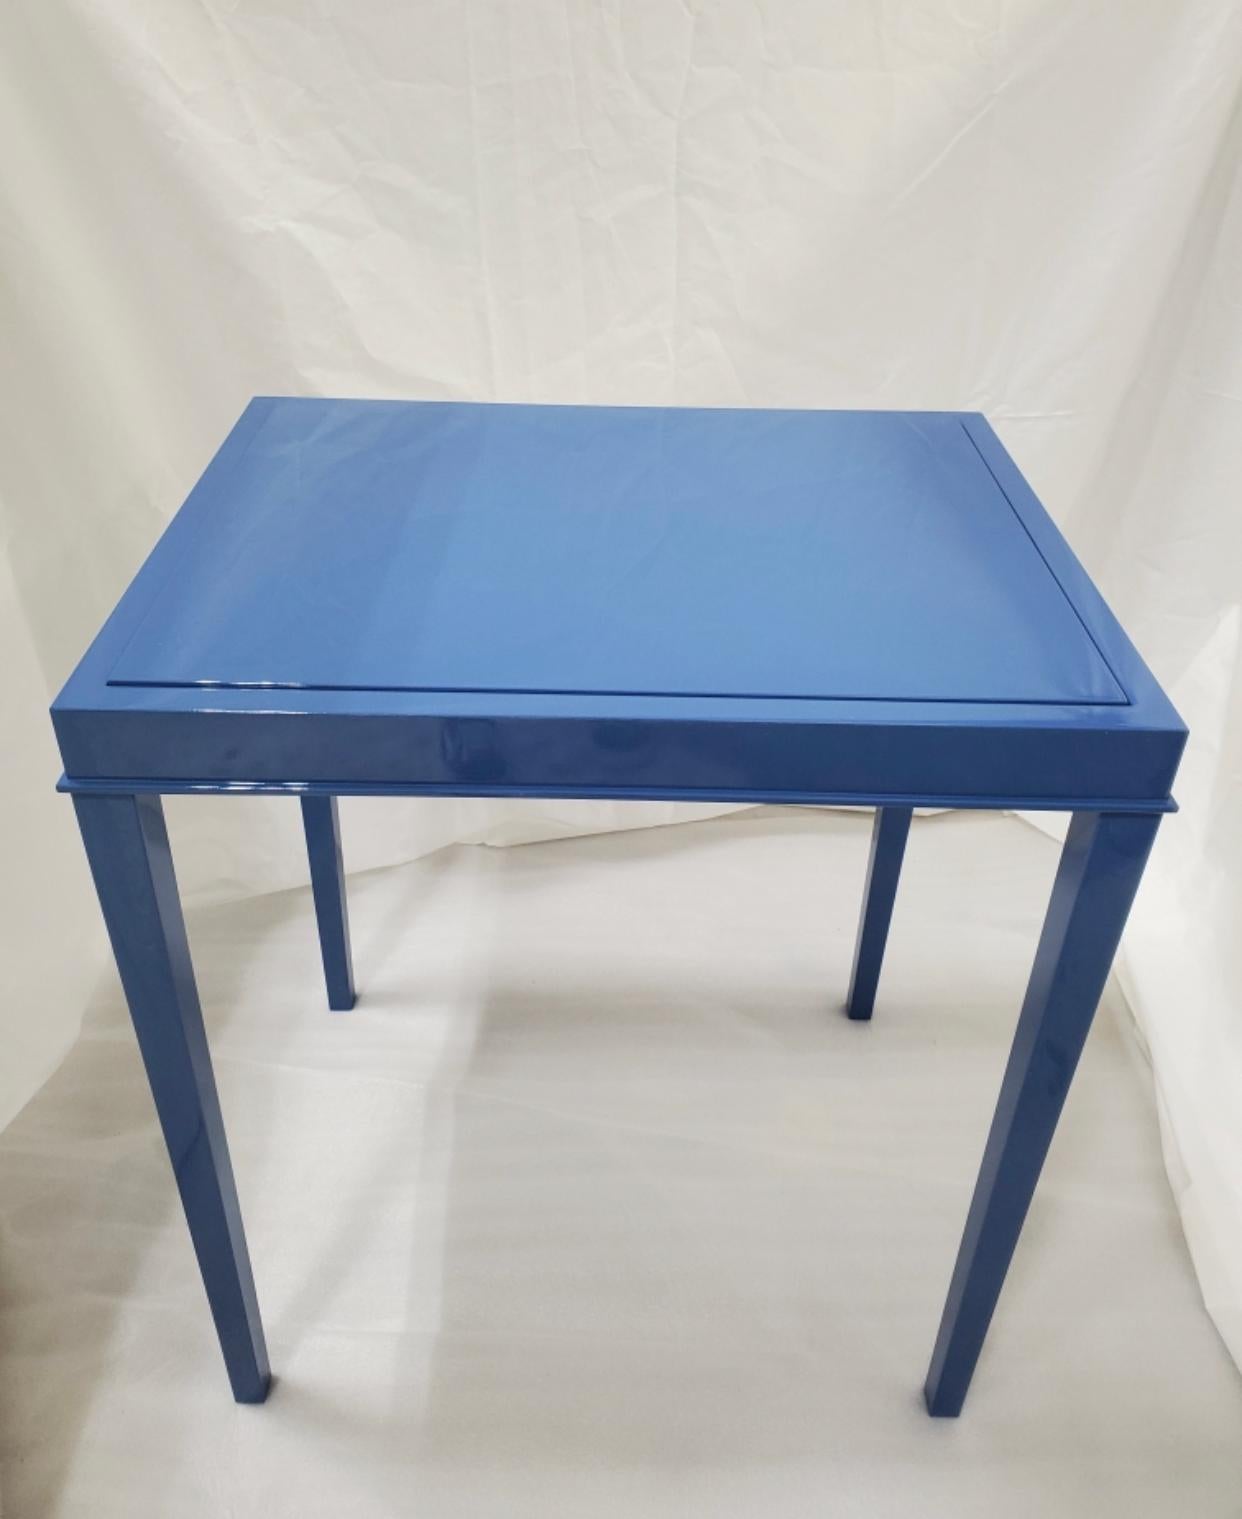 Table laquée bleue qui se transforme en table de backgammon.
Nouvelle production. Conçue et fabriquée à New York, chaque table est fabriquée à la main dans cette ville et possède des attributs uniques. Livraison en un jour à New York.
 
 